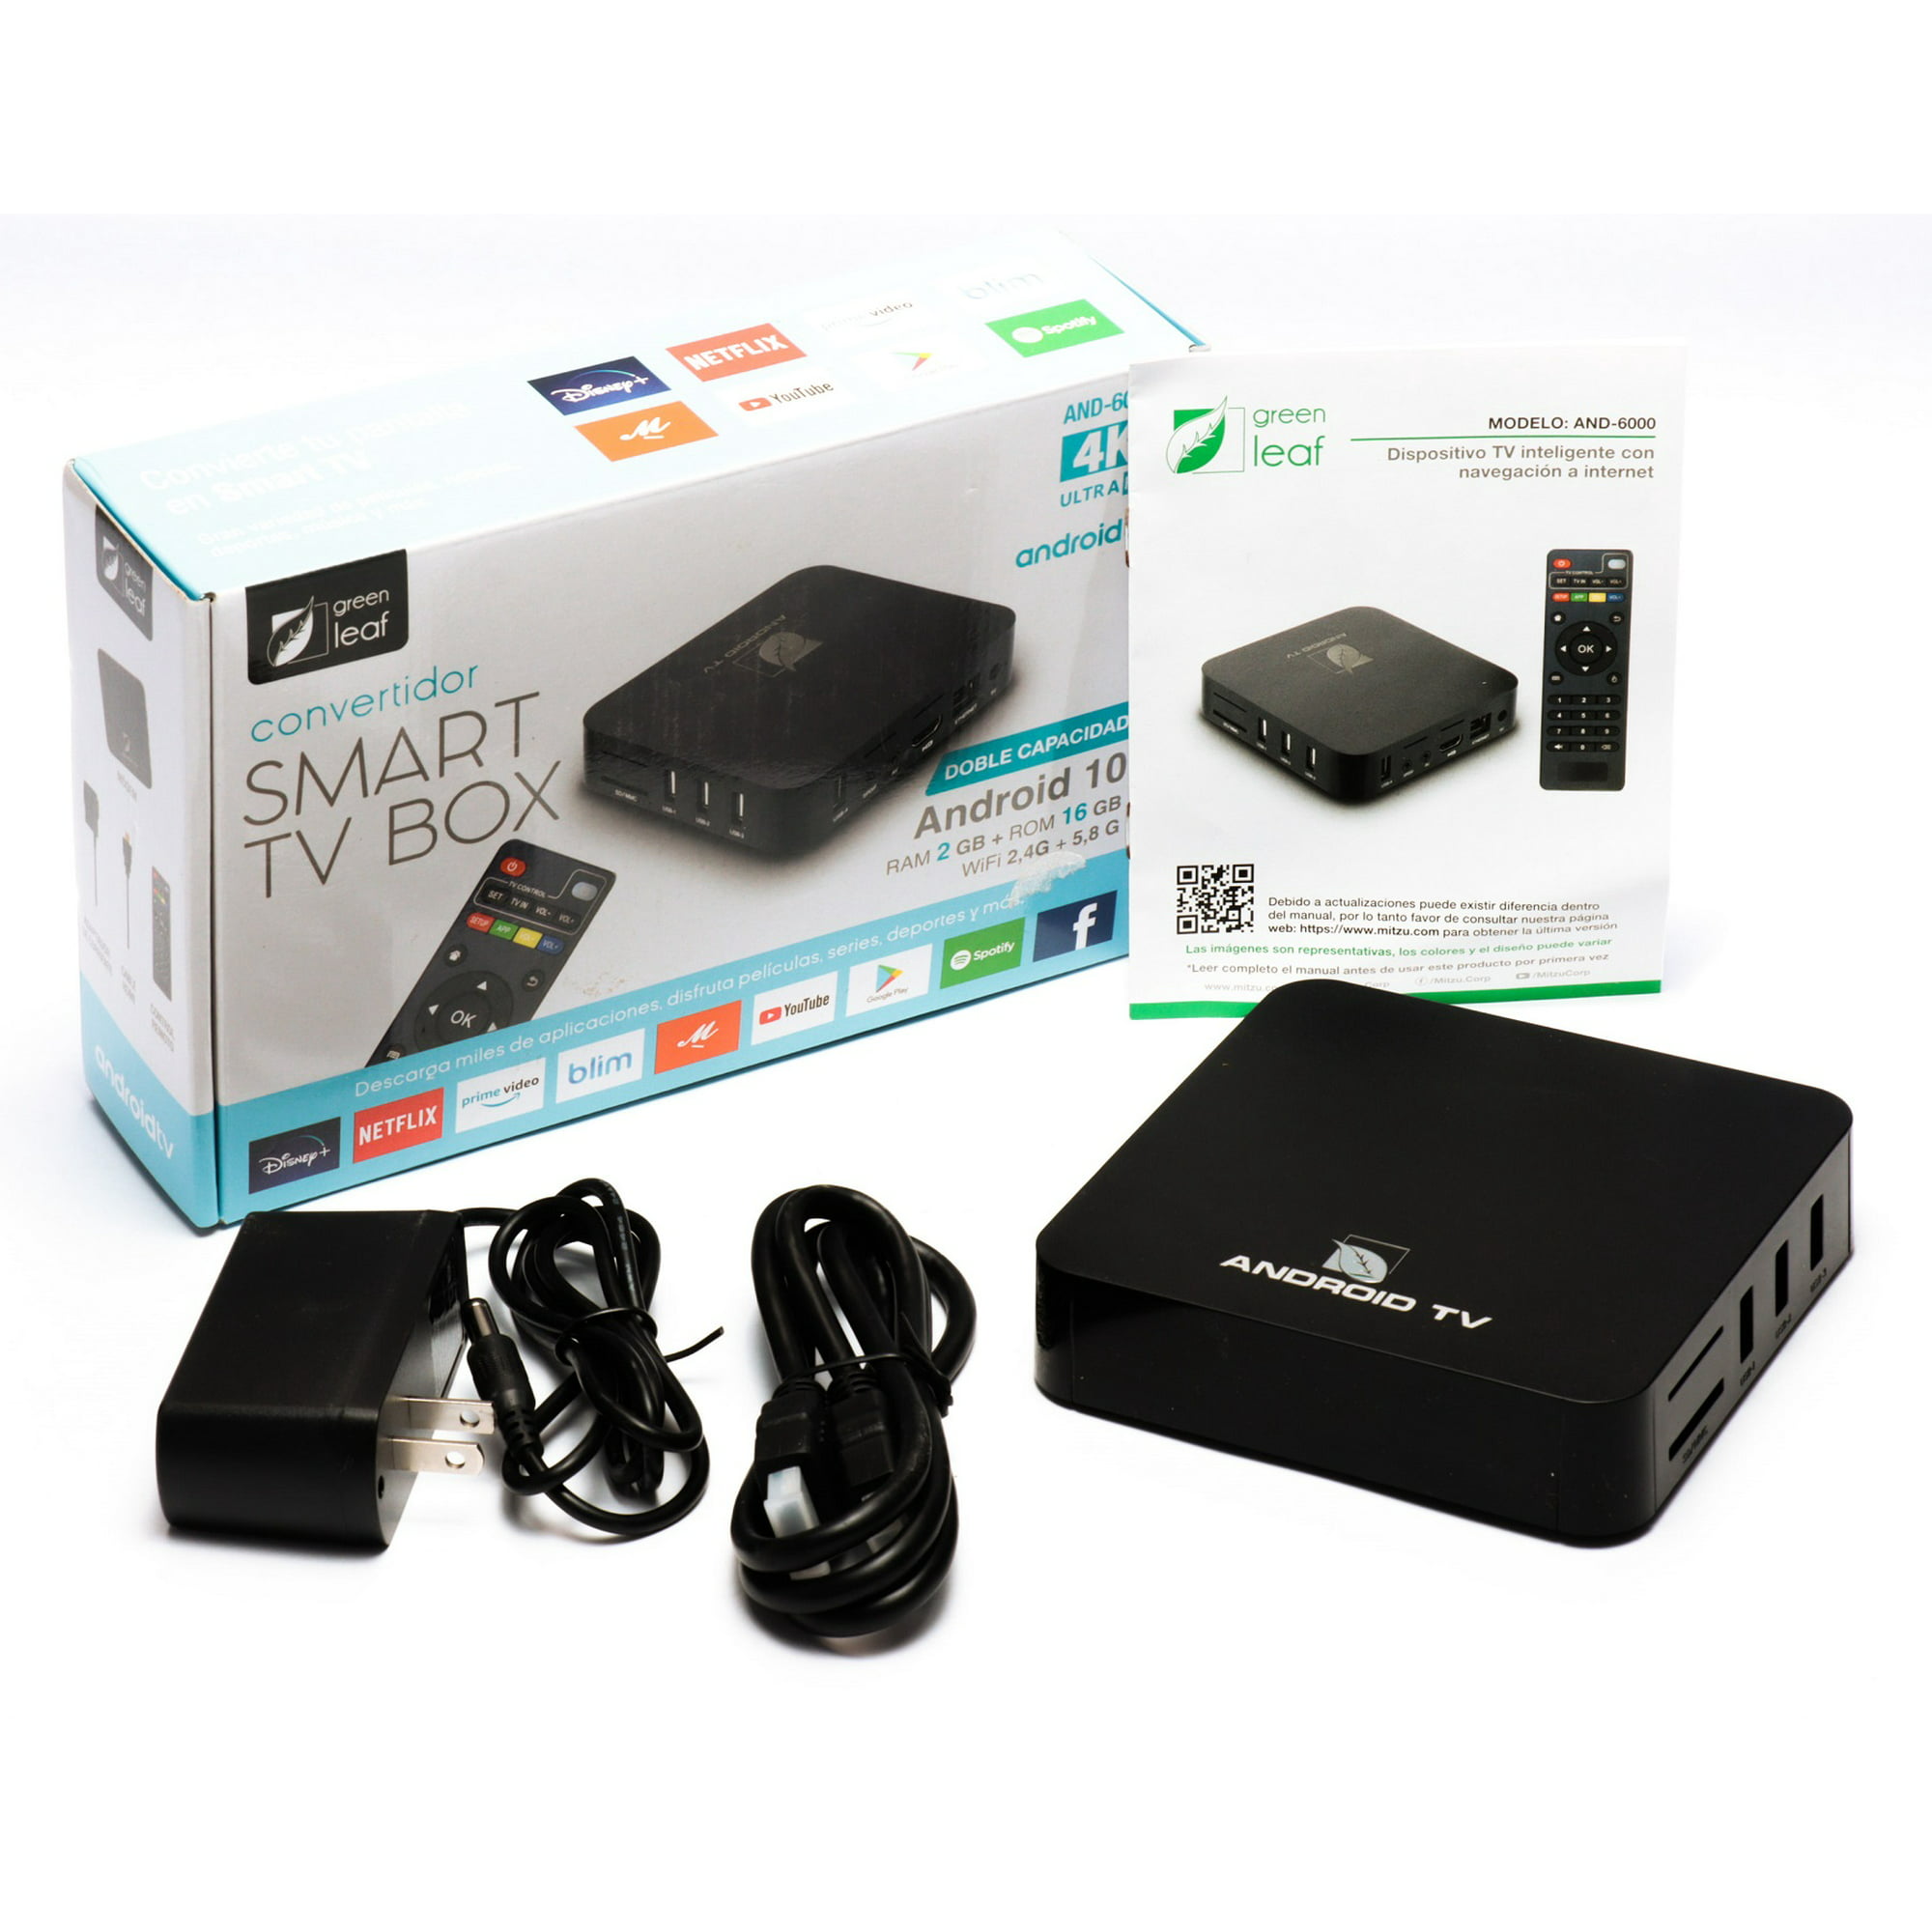 CONVERTIDOR SMART TV BOX GHIA ANDROID MEMORIA INTERNA 8GB COLOR